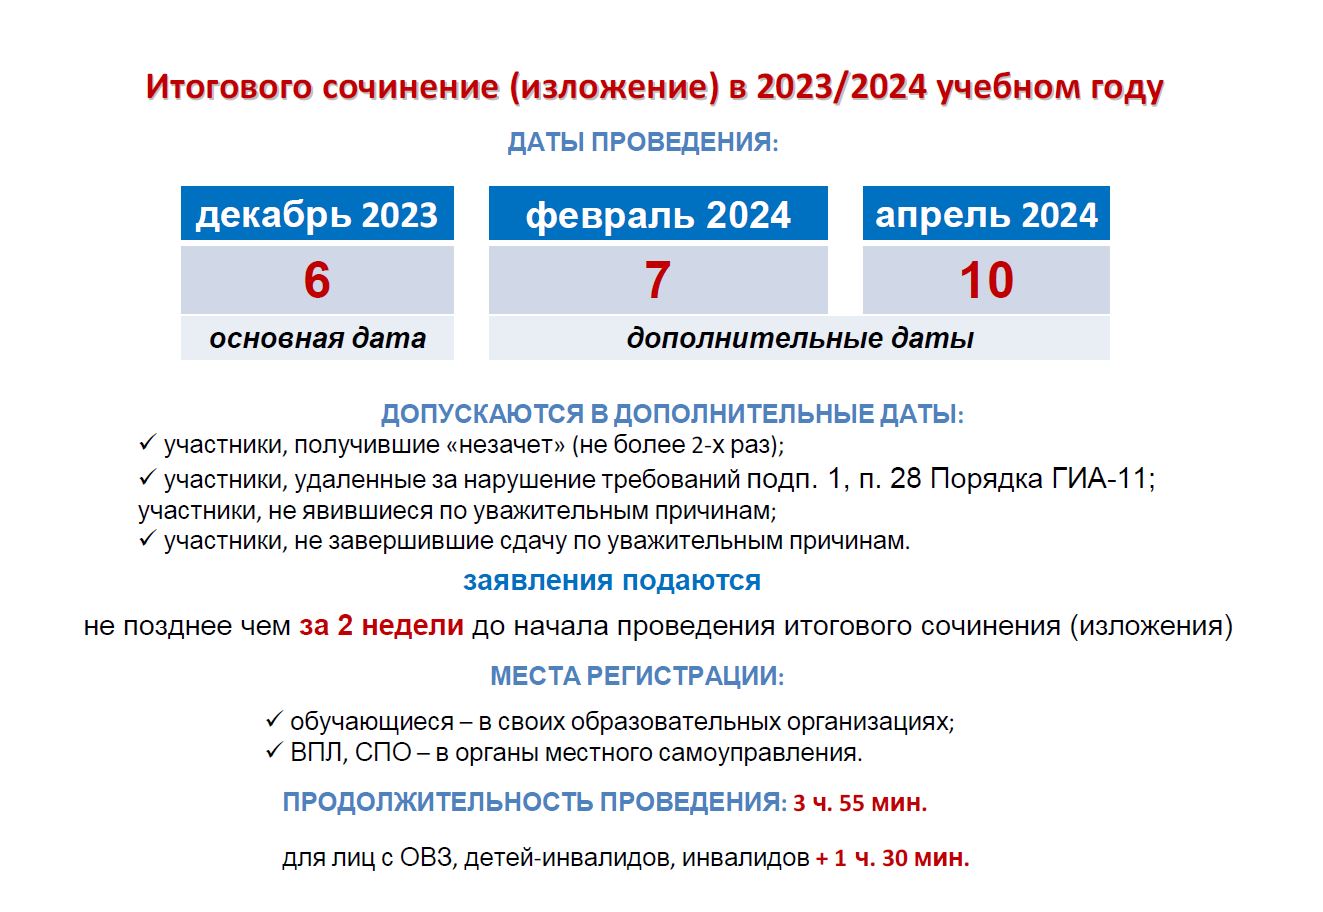 Итоговое сочинение (изложение) 2023/2024 (Общая информация)